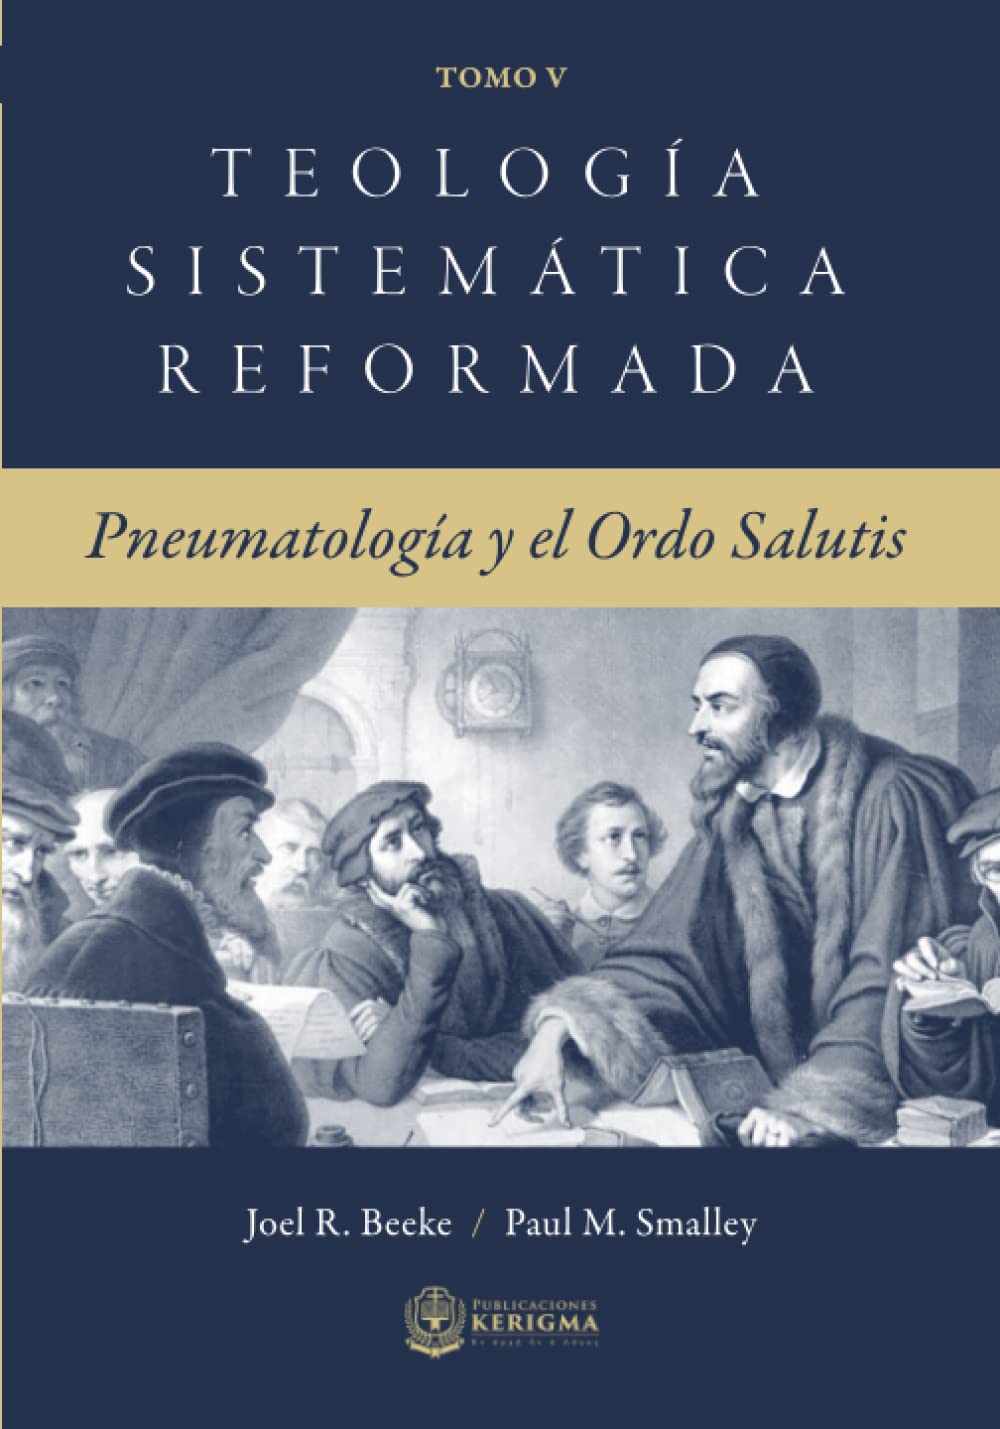 Teología Sistemática Reformada Vol.5